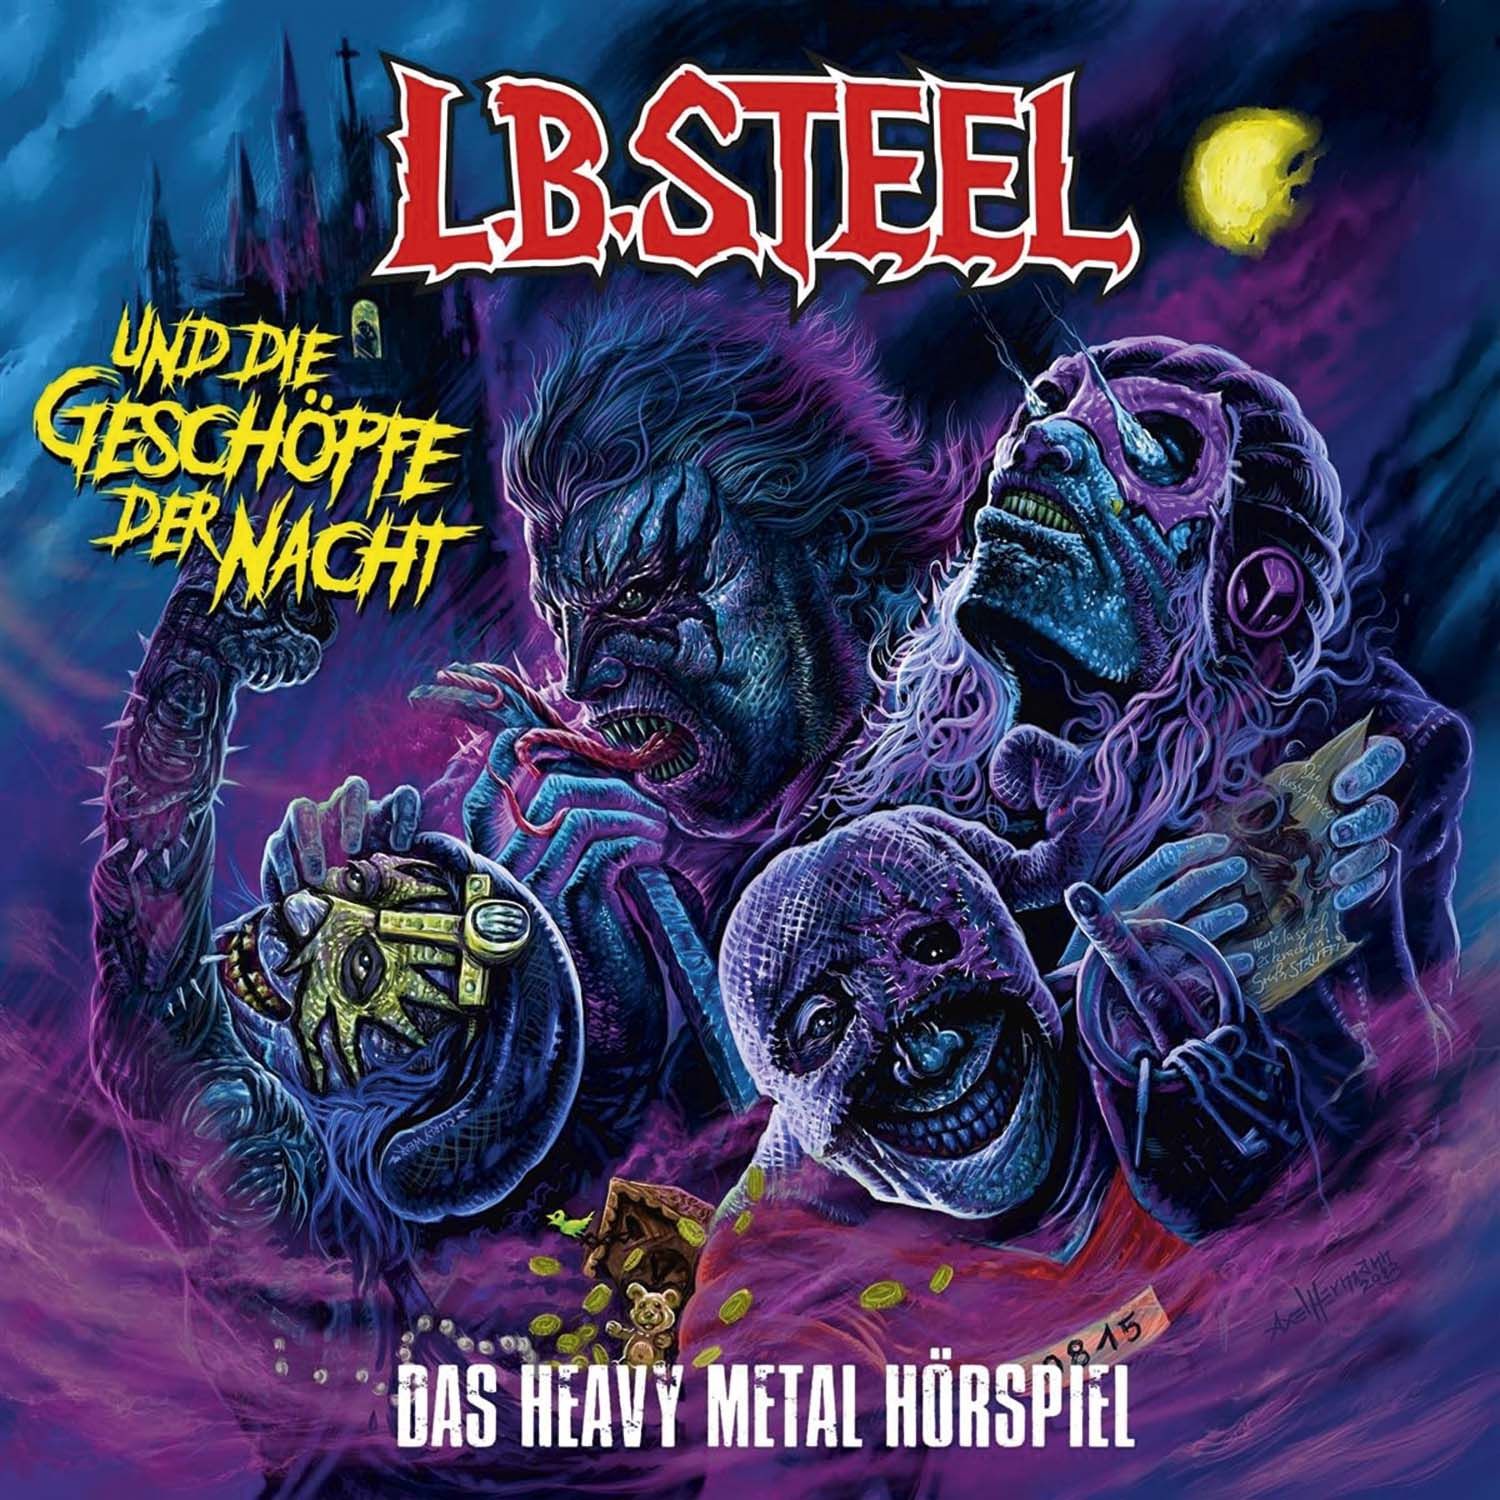 L.B. Steel und die Geschöpfe der Nacht - Das Heavy Metal Hörspiel